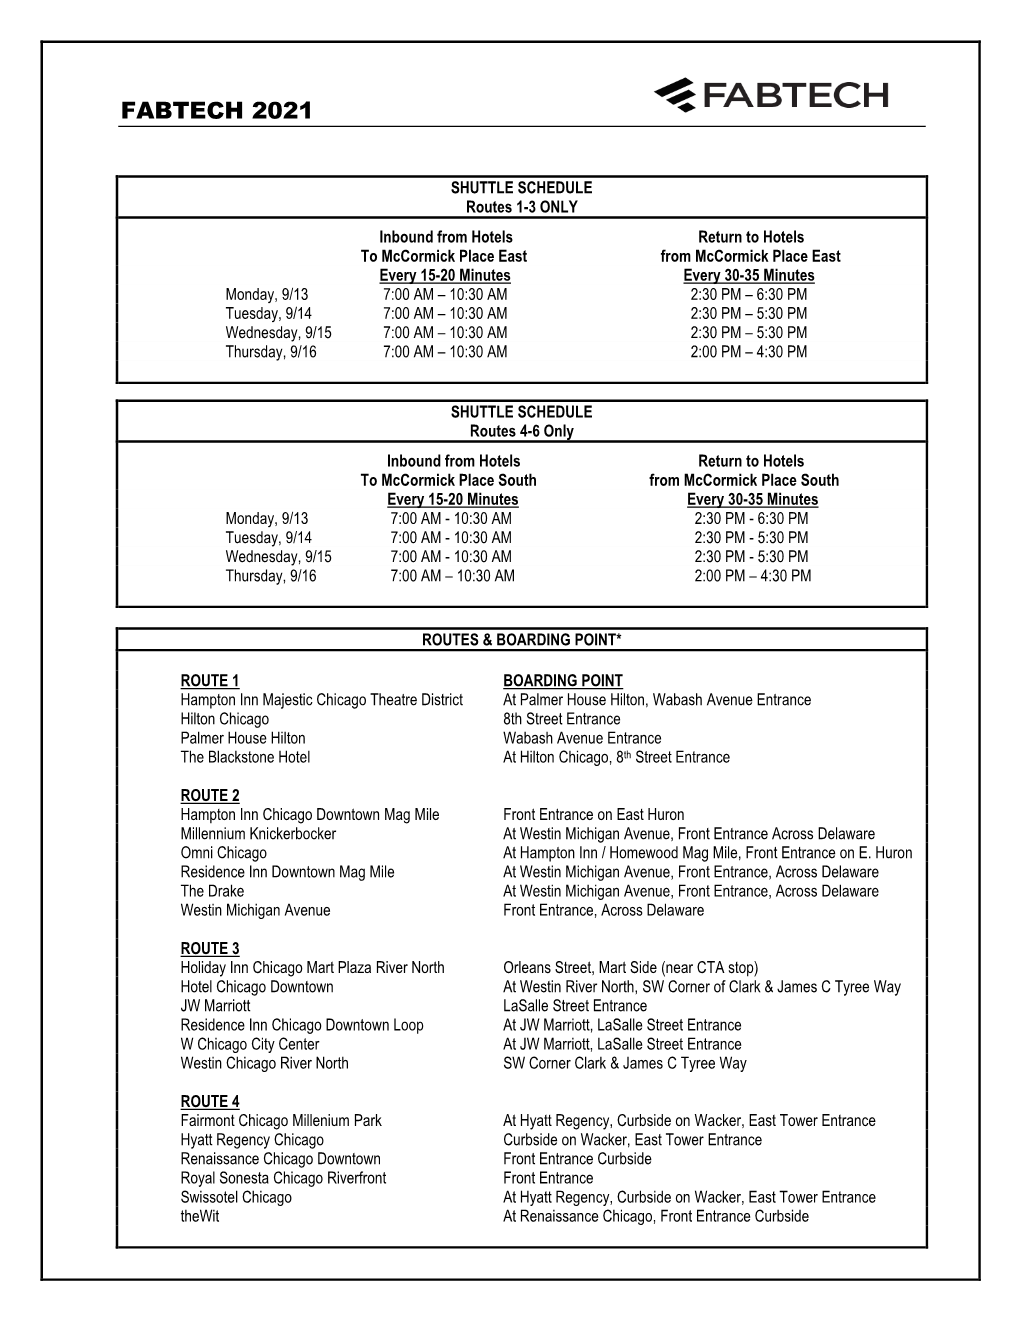 Exhibitor Shuttle Schedule